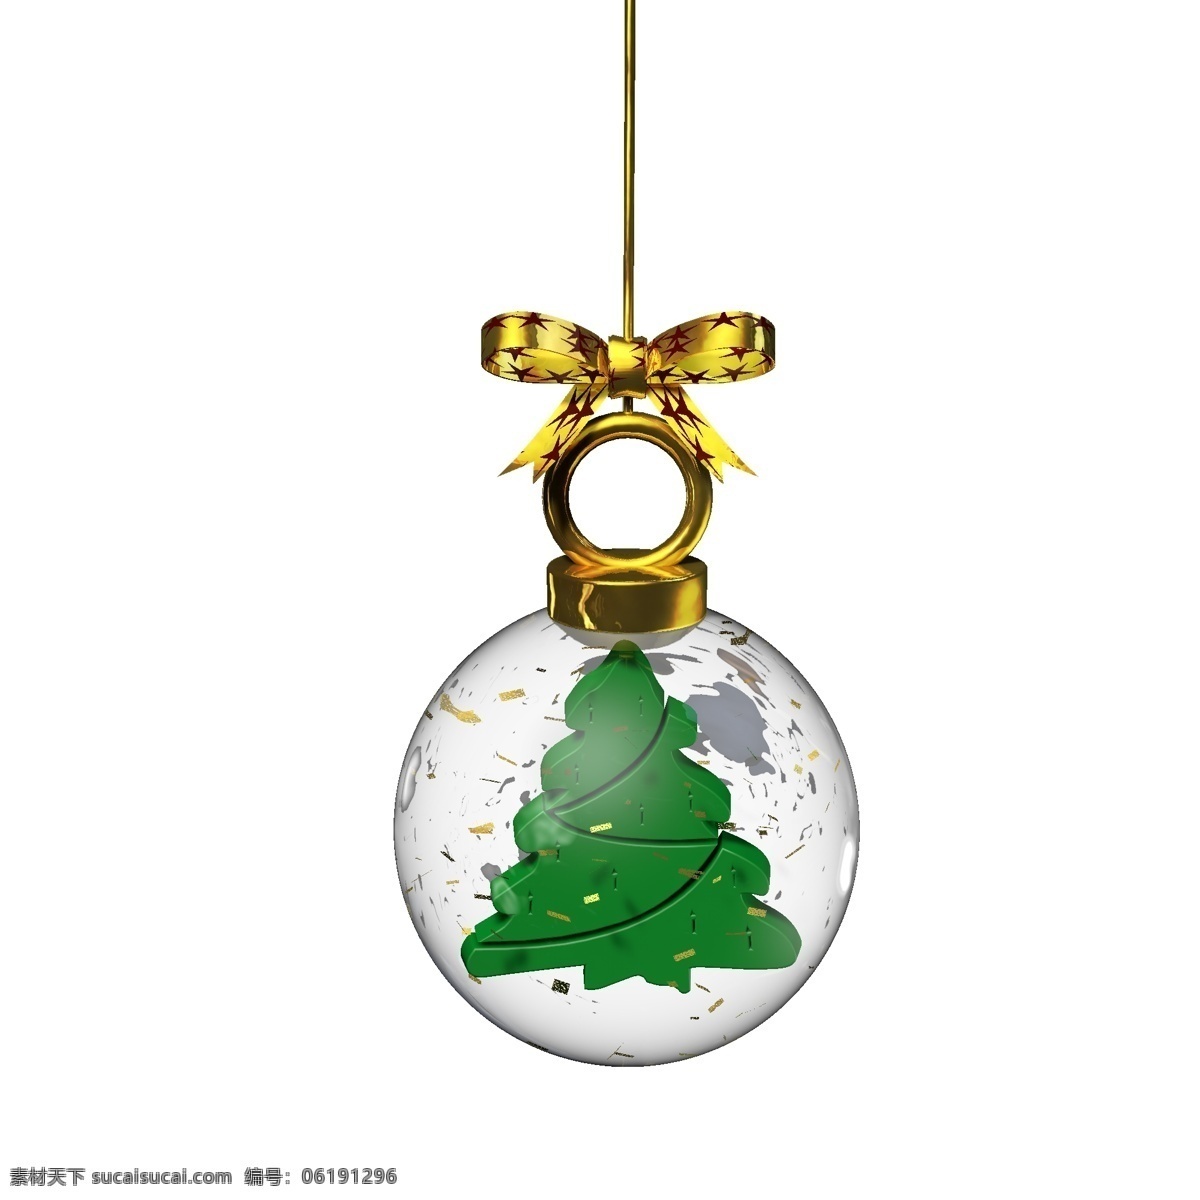 金色 圣诞 元素 水晶 玻璃球 挂件 圣诞树 彩色 卡通 绿色 圣诞元素 水晶球